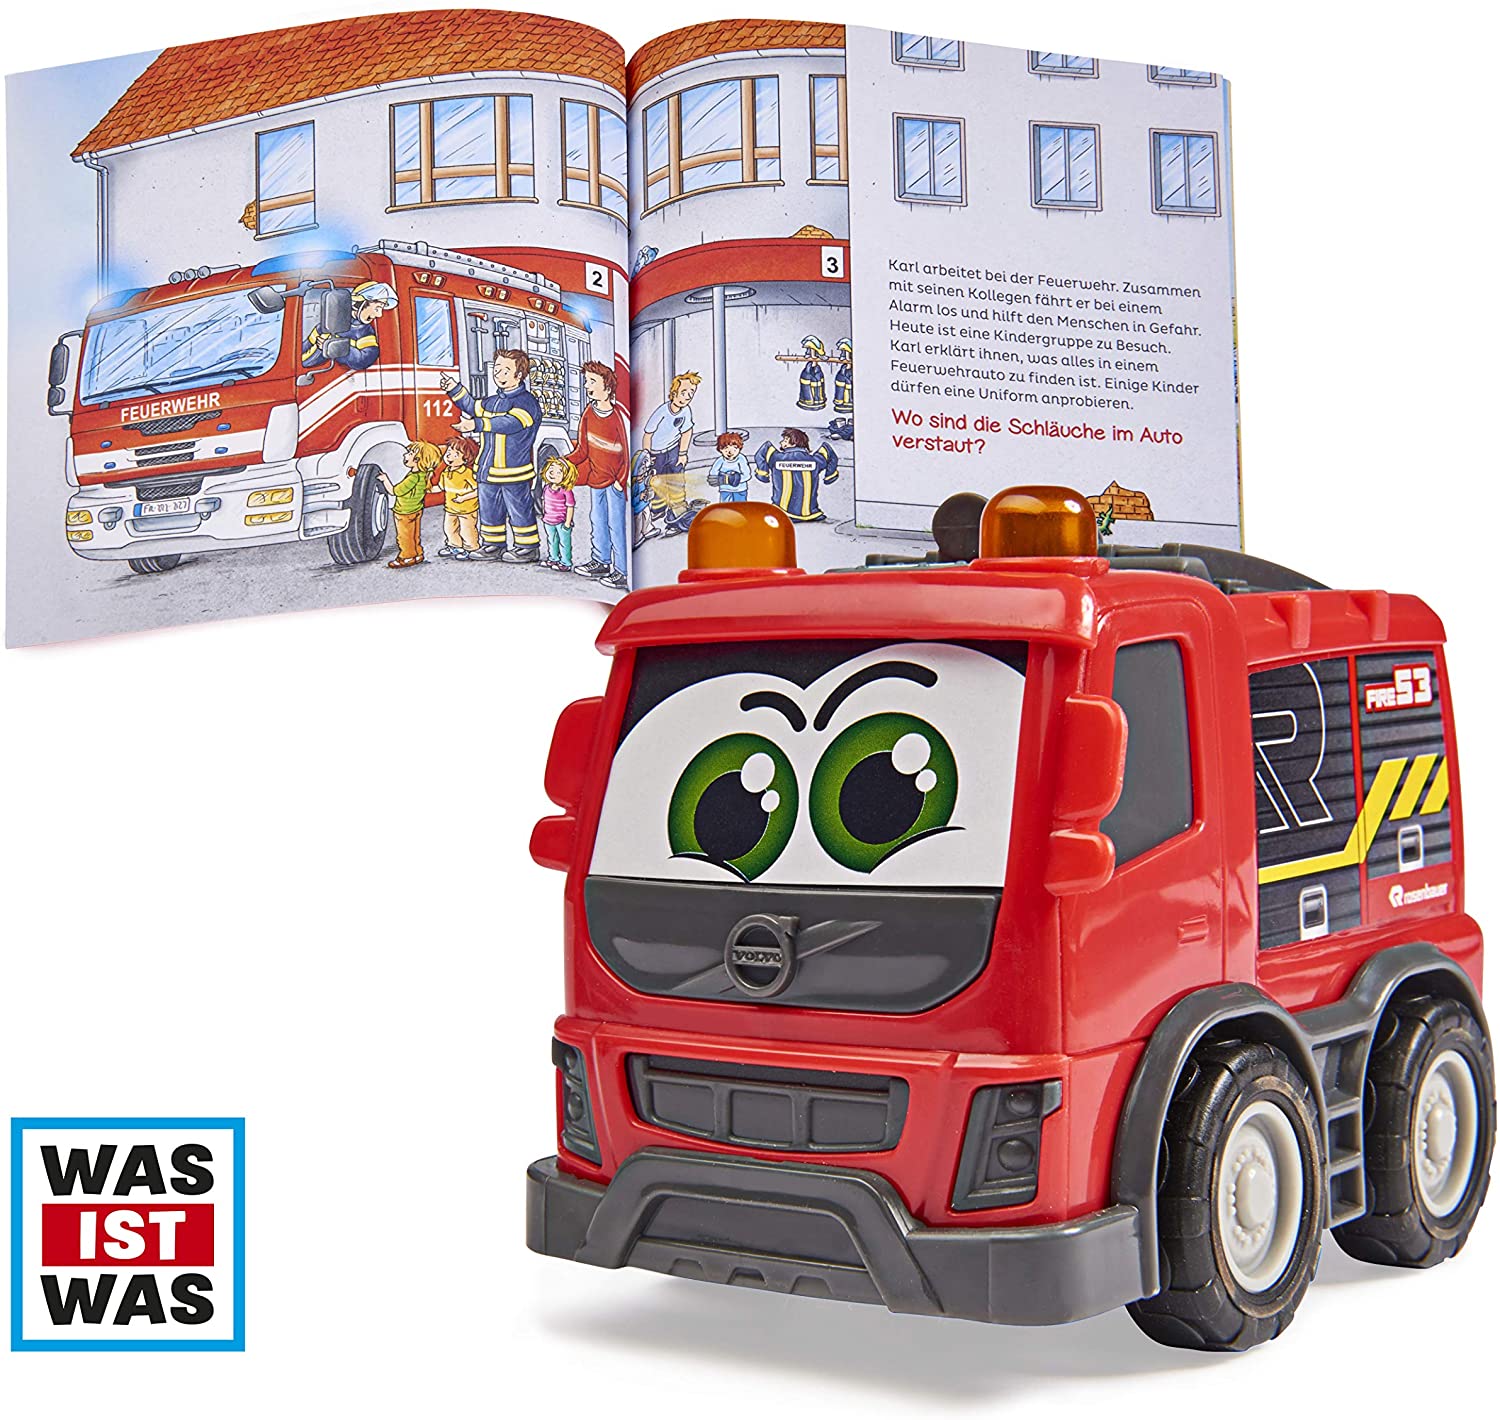 Dickie Toys Was Ist Wasfeuerwehr, Volvo Rosenbauer Fire Brigade With Freewh